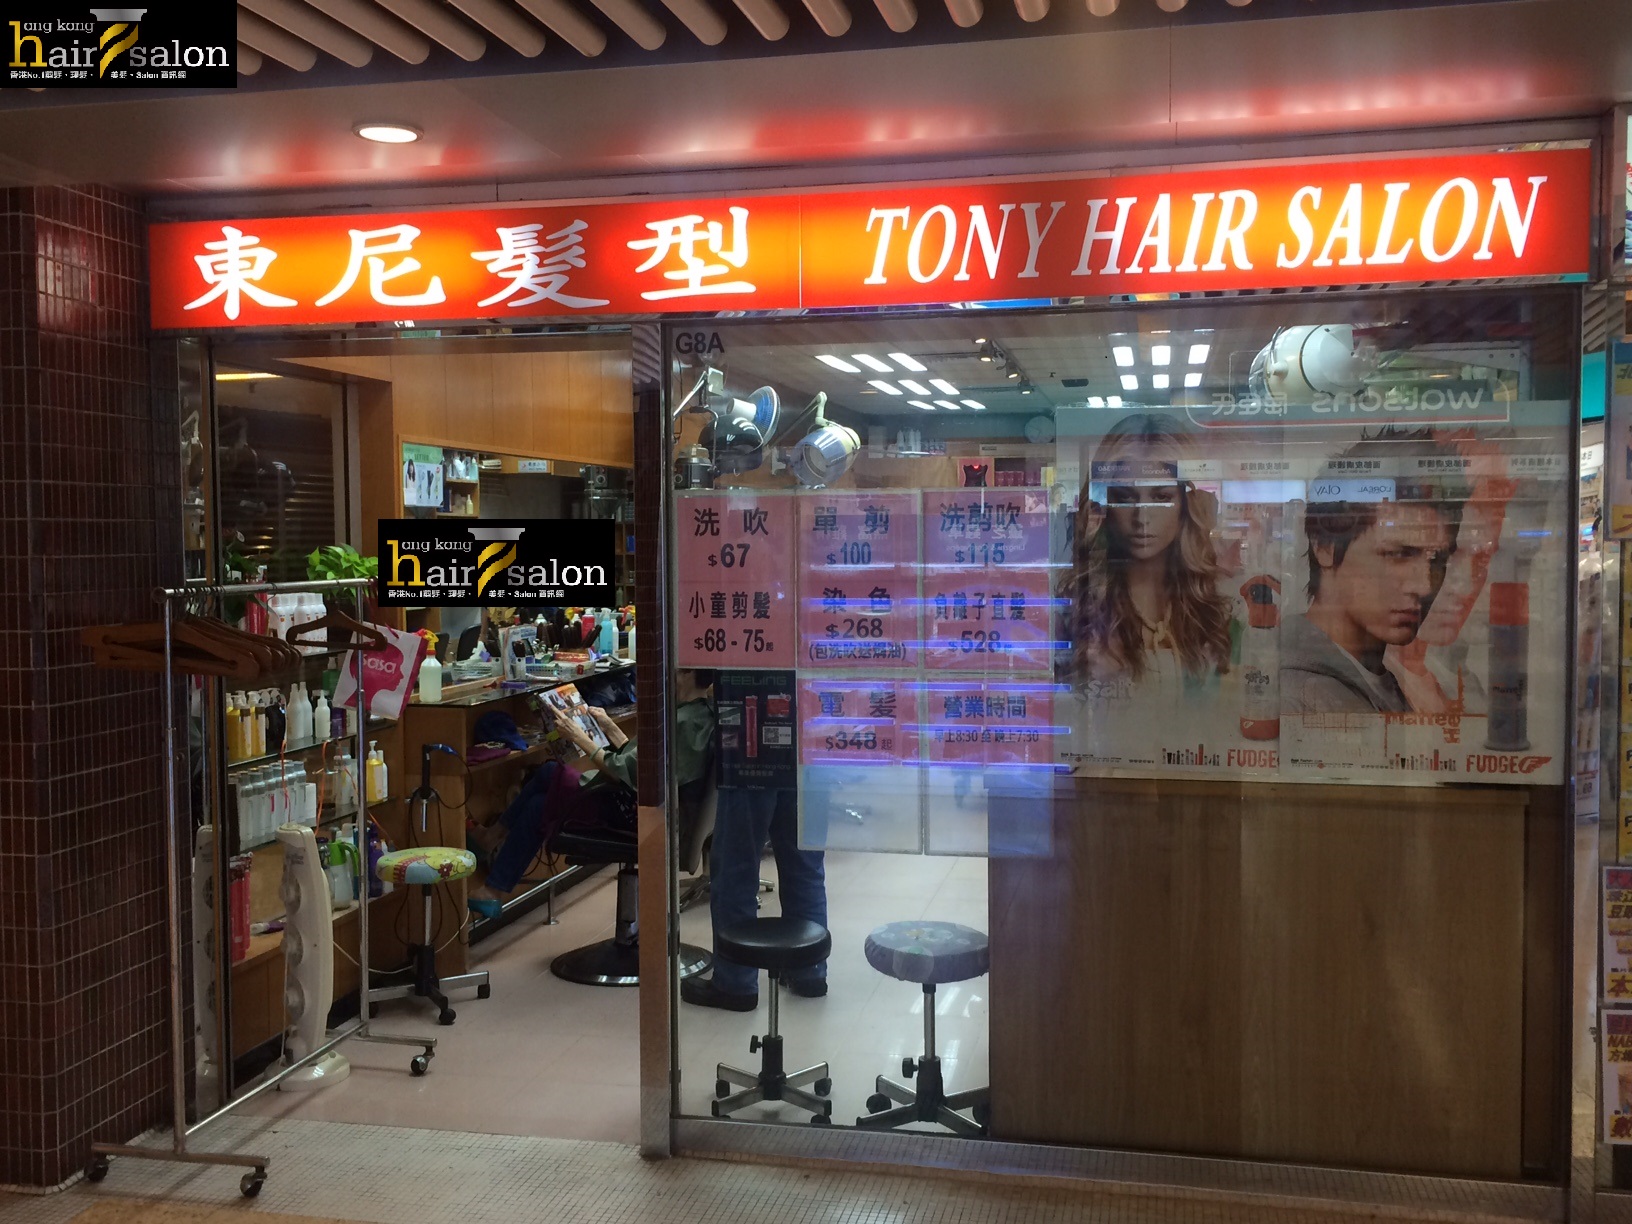 染髮: 東尼髮型 Tony Hair Salon